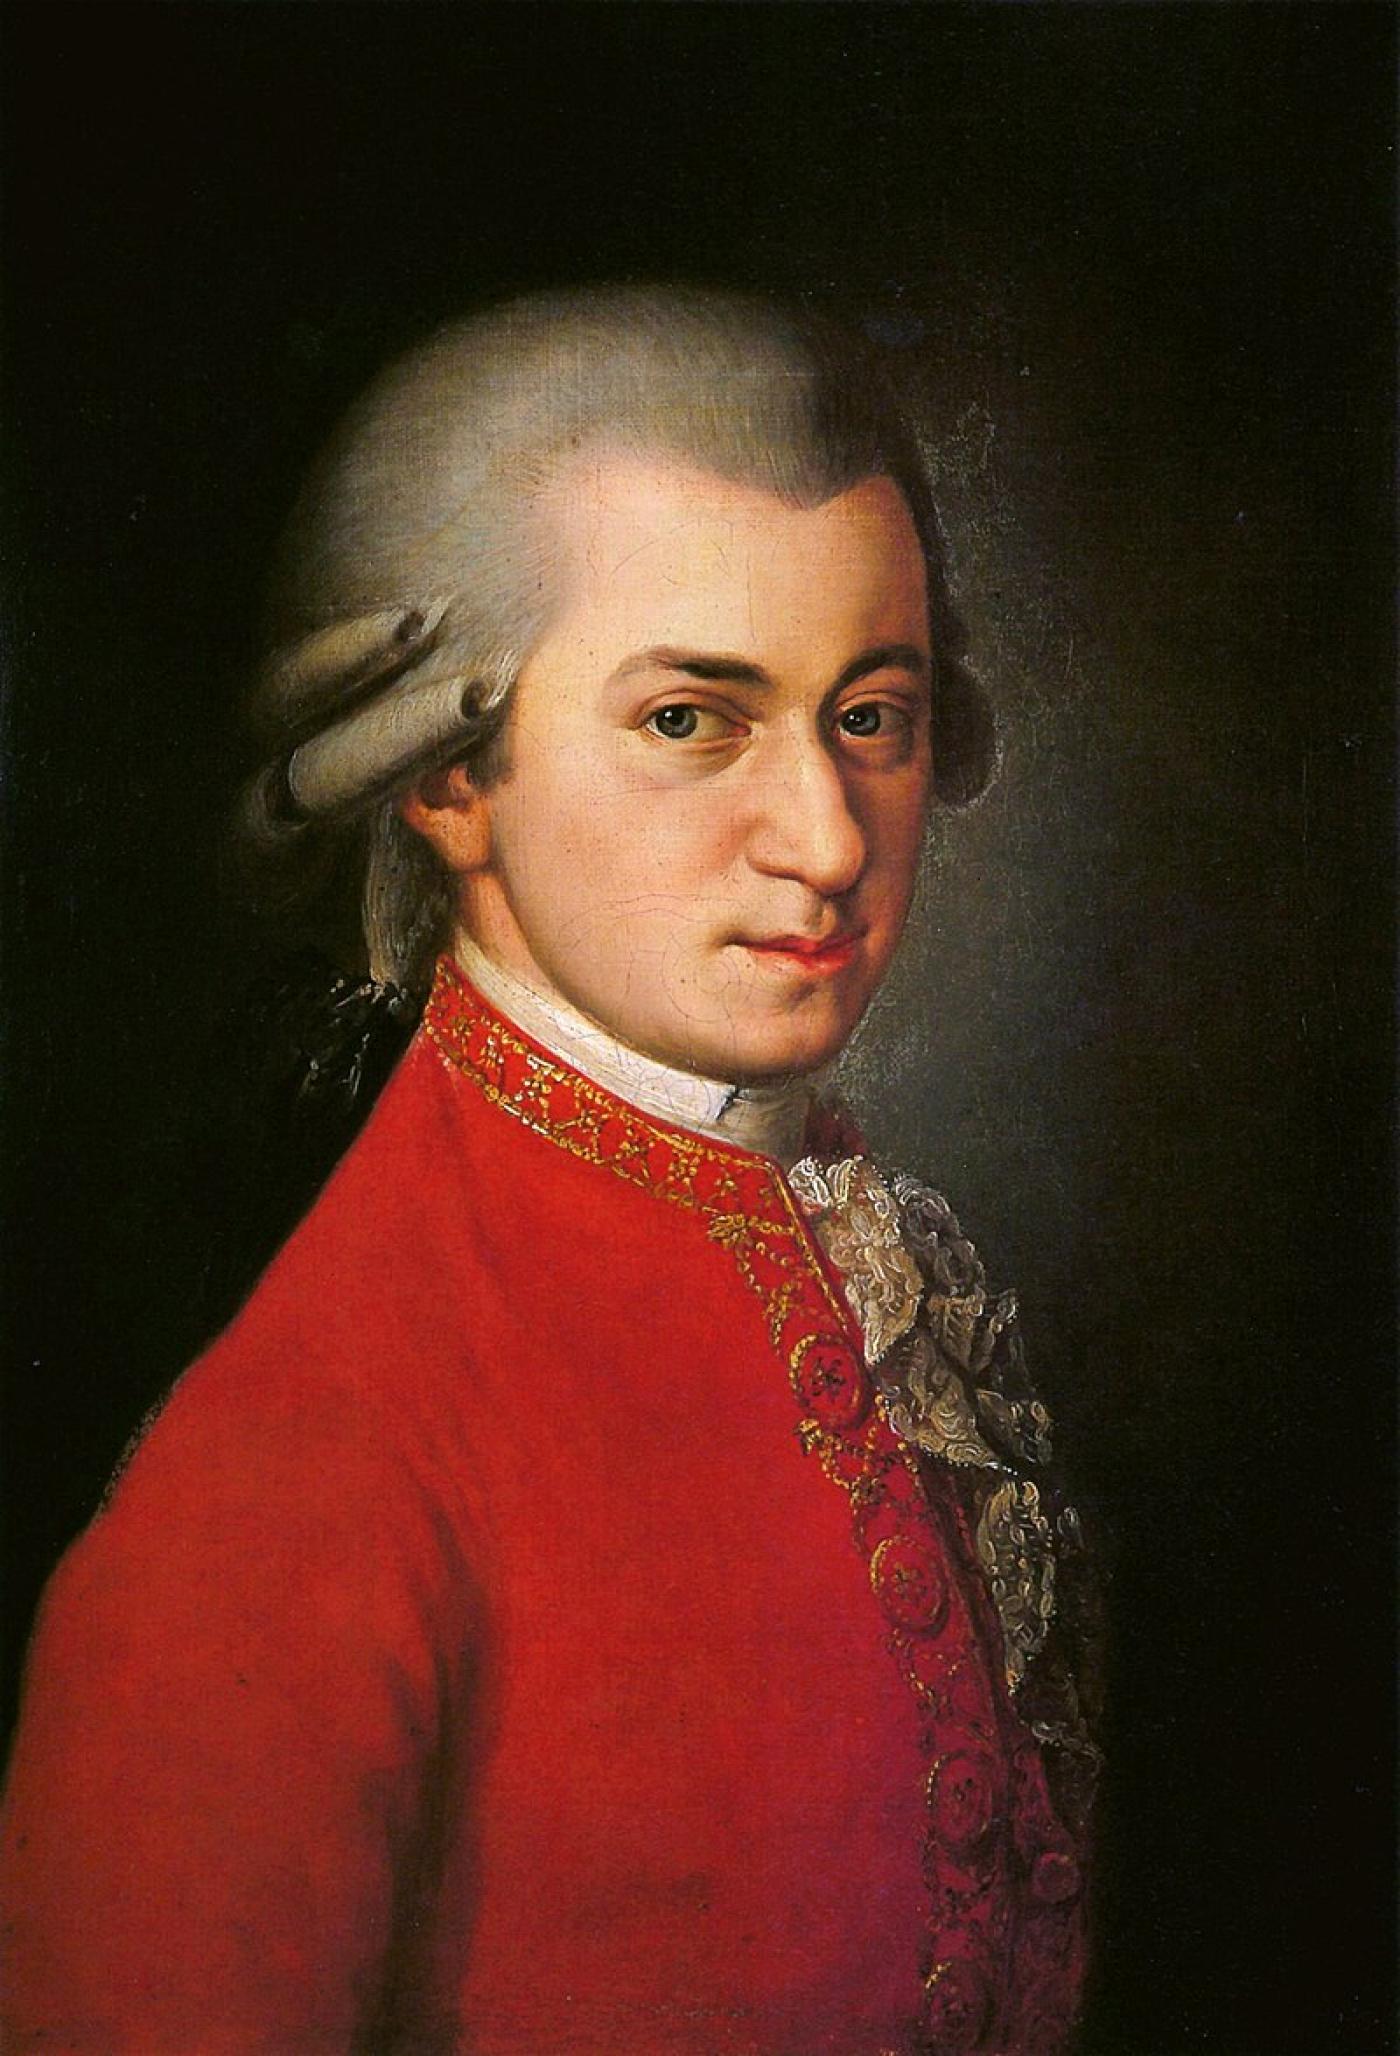 Wolfgang Amadeus Mozart by Brabara Kraft, 1819